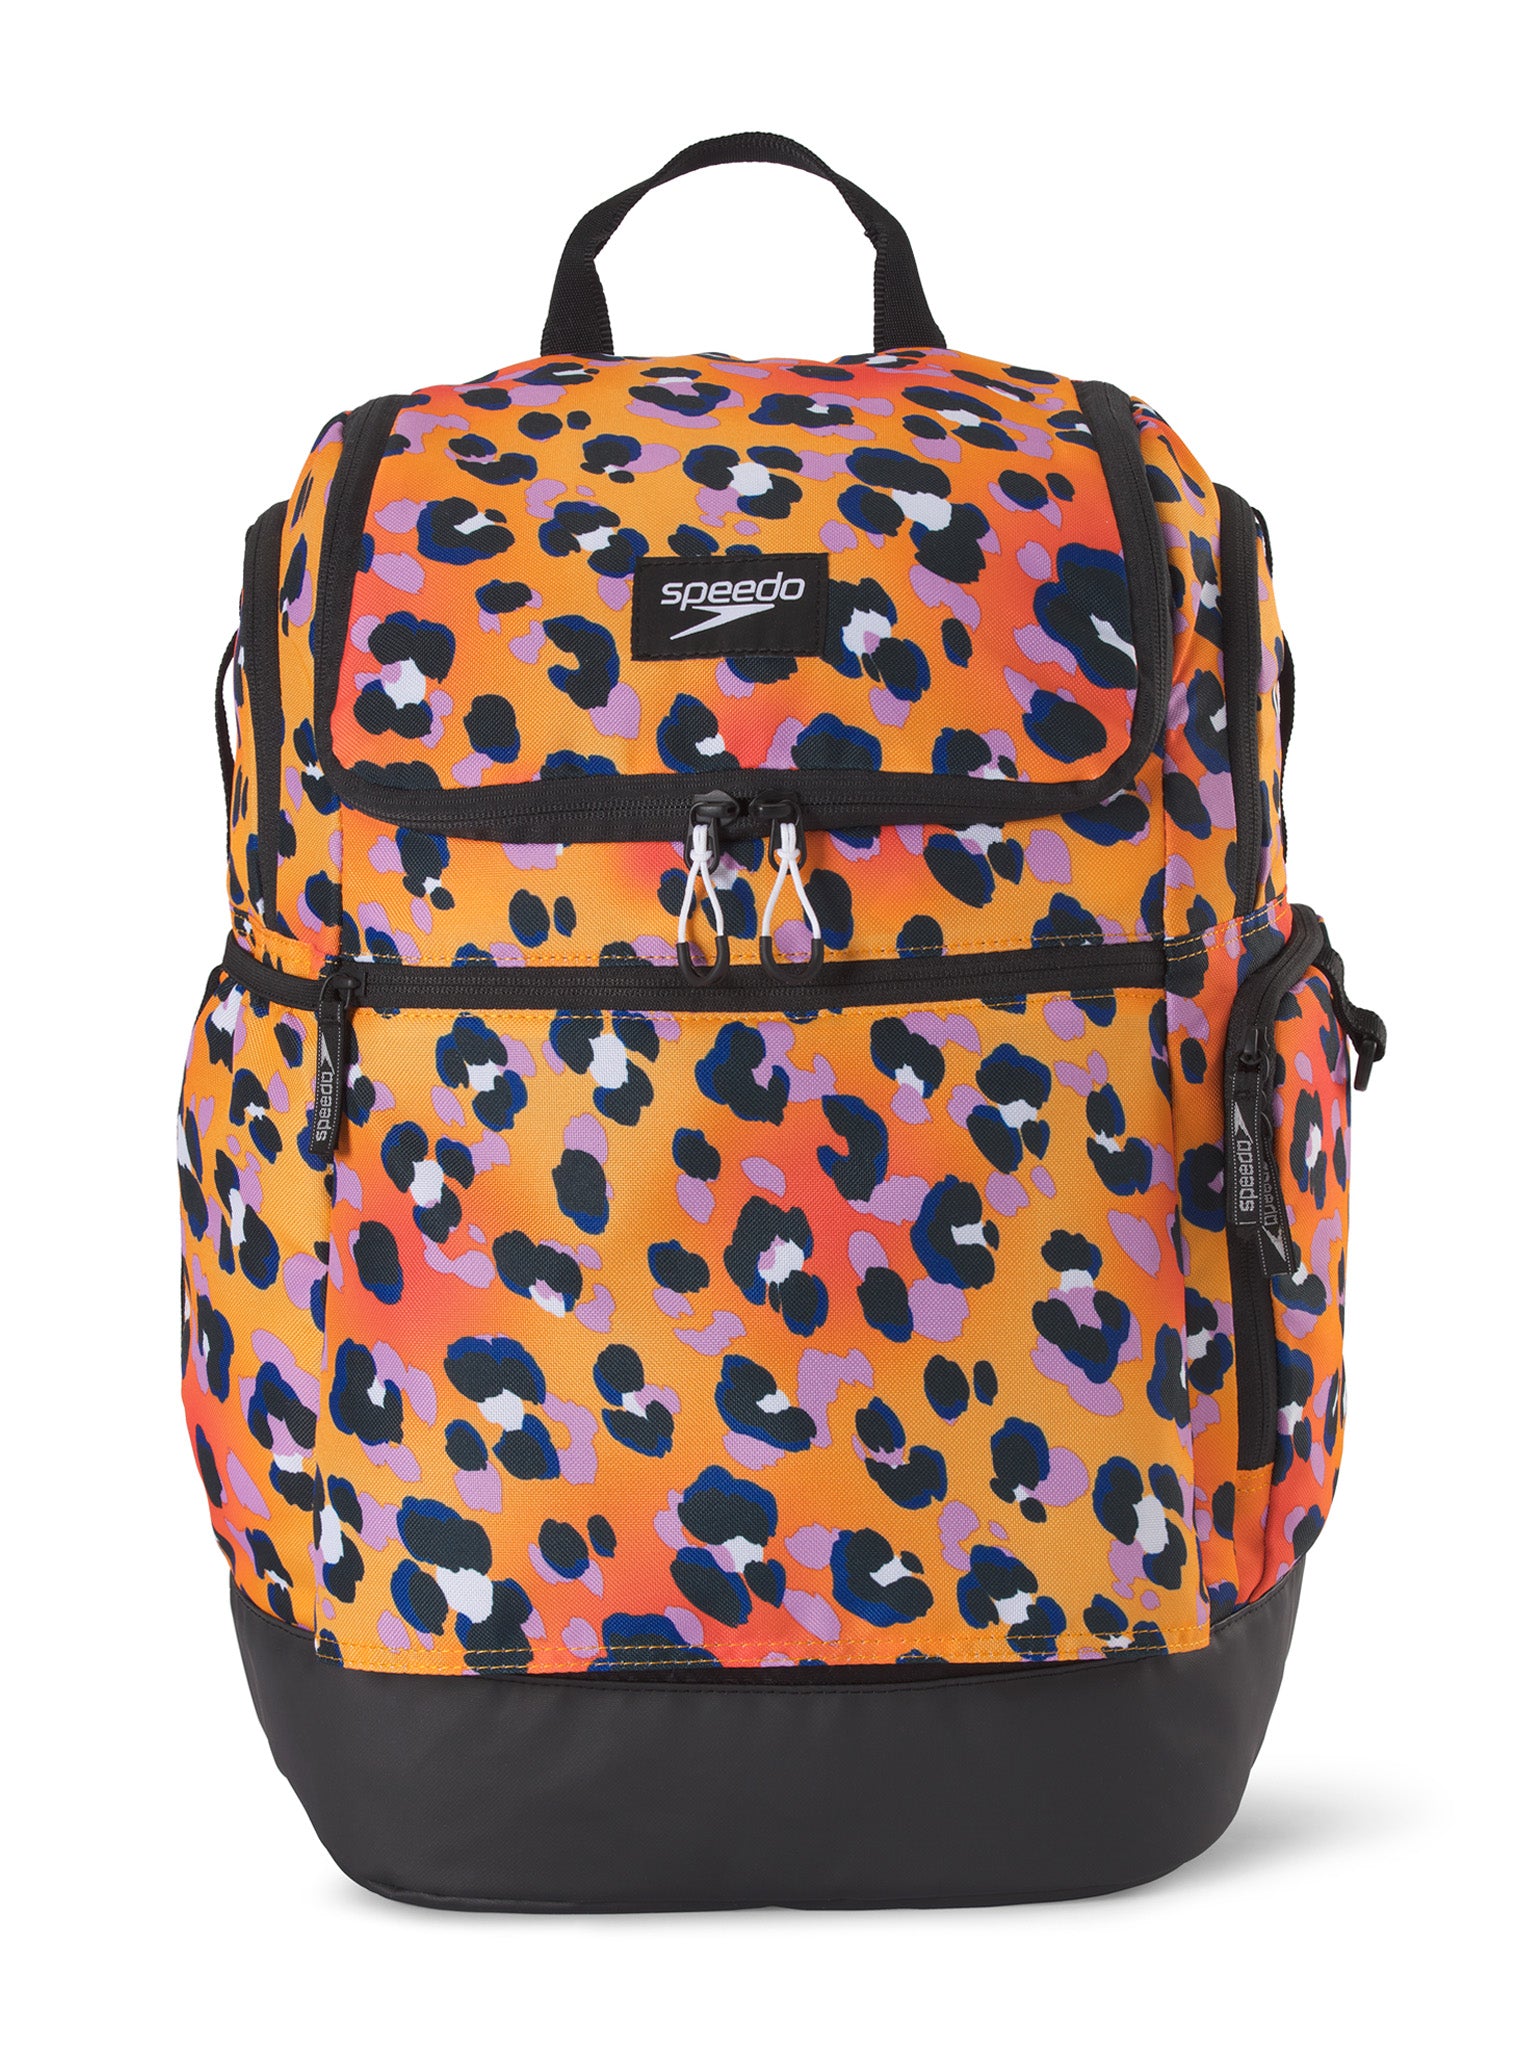 Teamster 2.0 Backpack - Cheetah Orange Pop